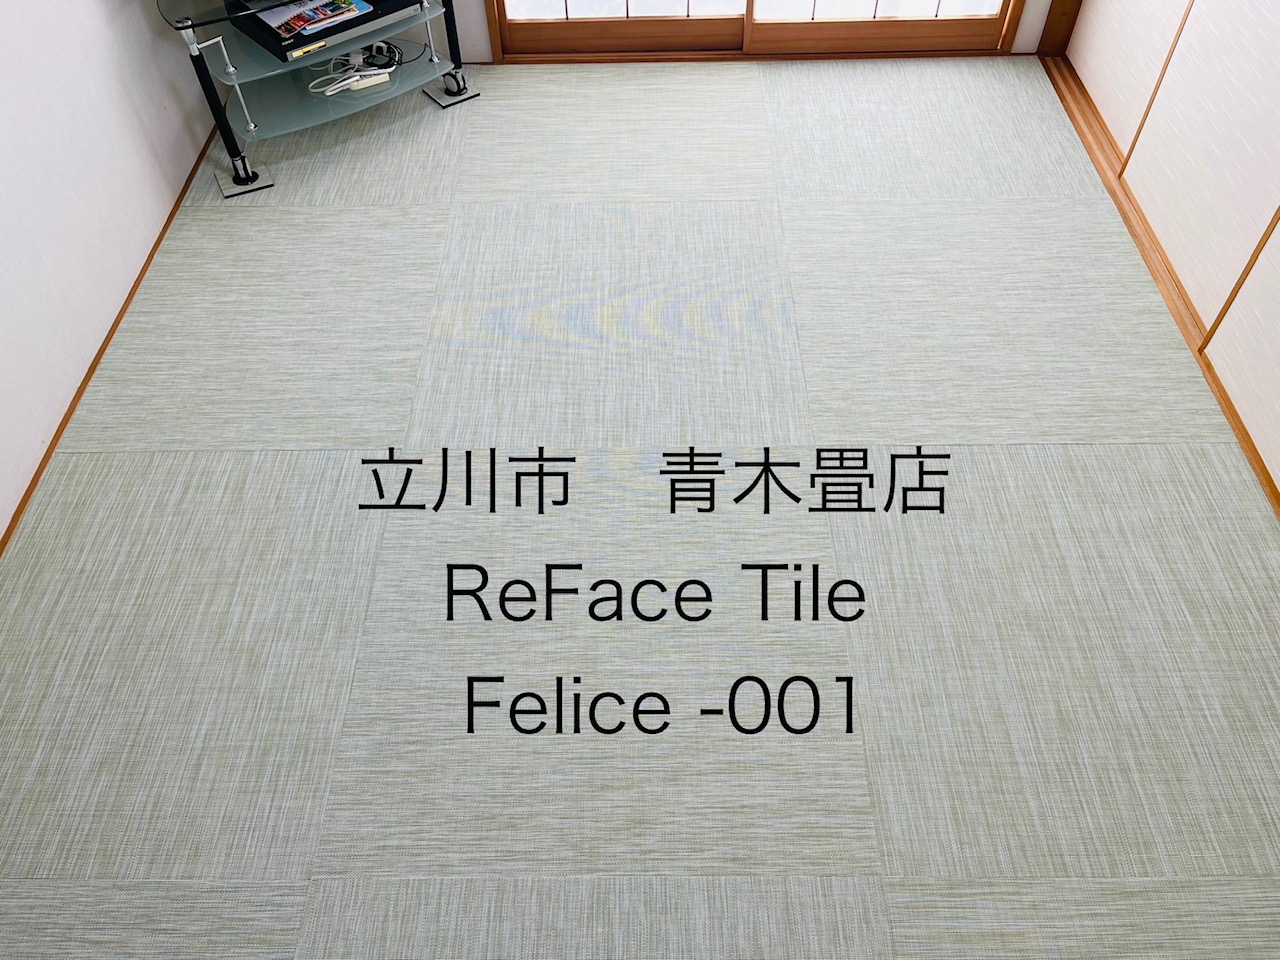 硬かった畳から柔らかな畳へ交換、ReFace Tileで冷たさが無くなり歩行感抜群プラスお洒落な空間に変身しました。東京都立川市